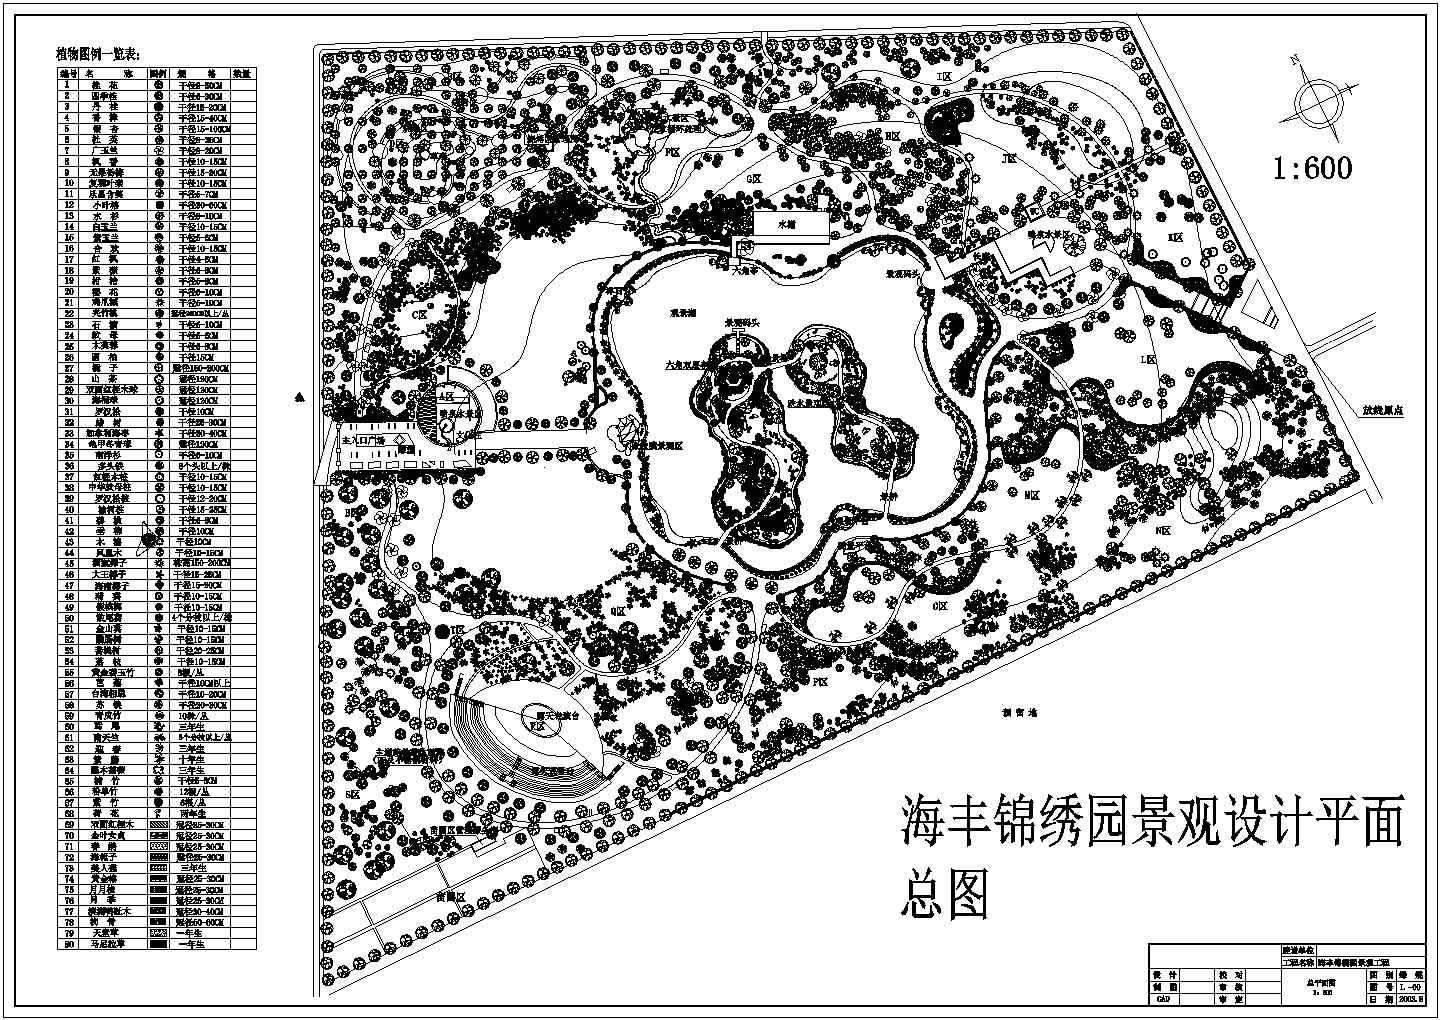 海丰锦绣园景观设计平面总图